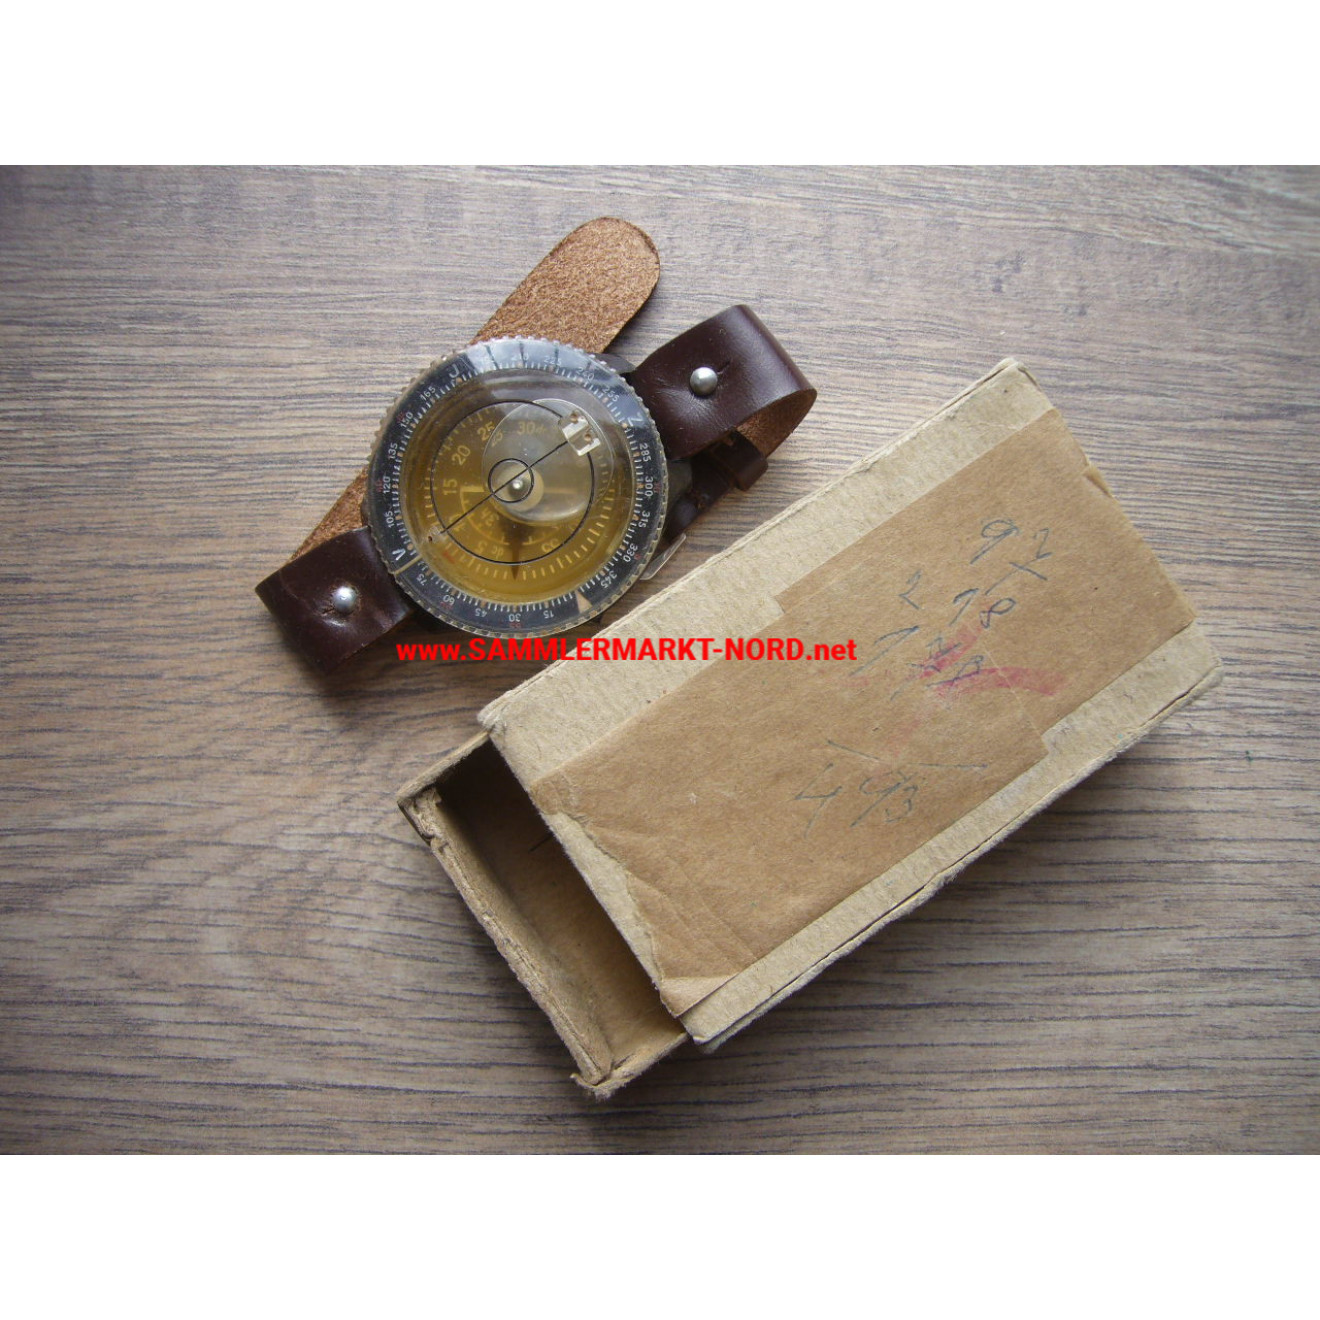 Luftwaffen Armkompass (sbe) mit original Schachtel